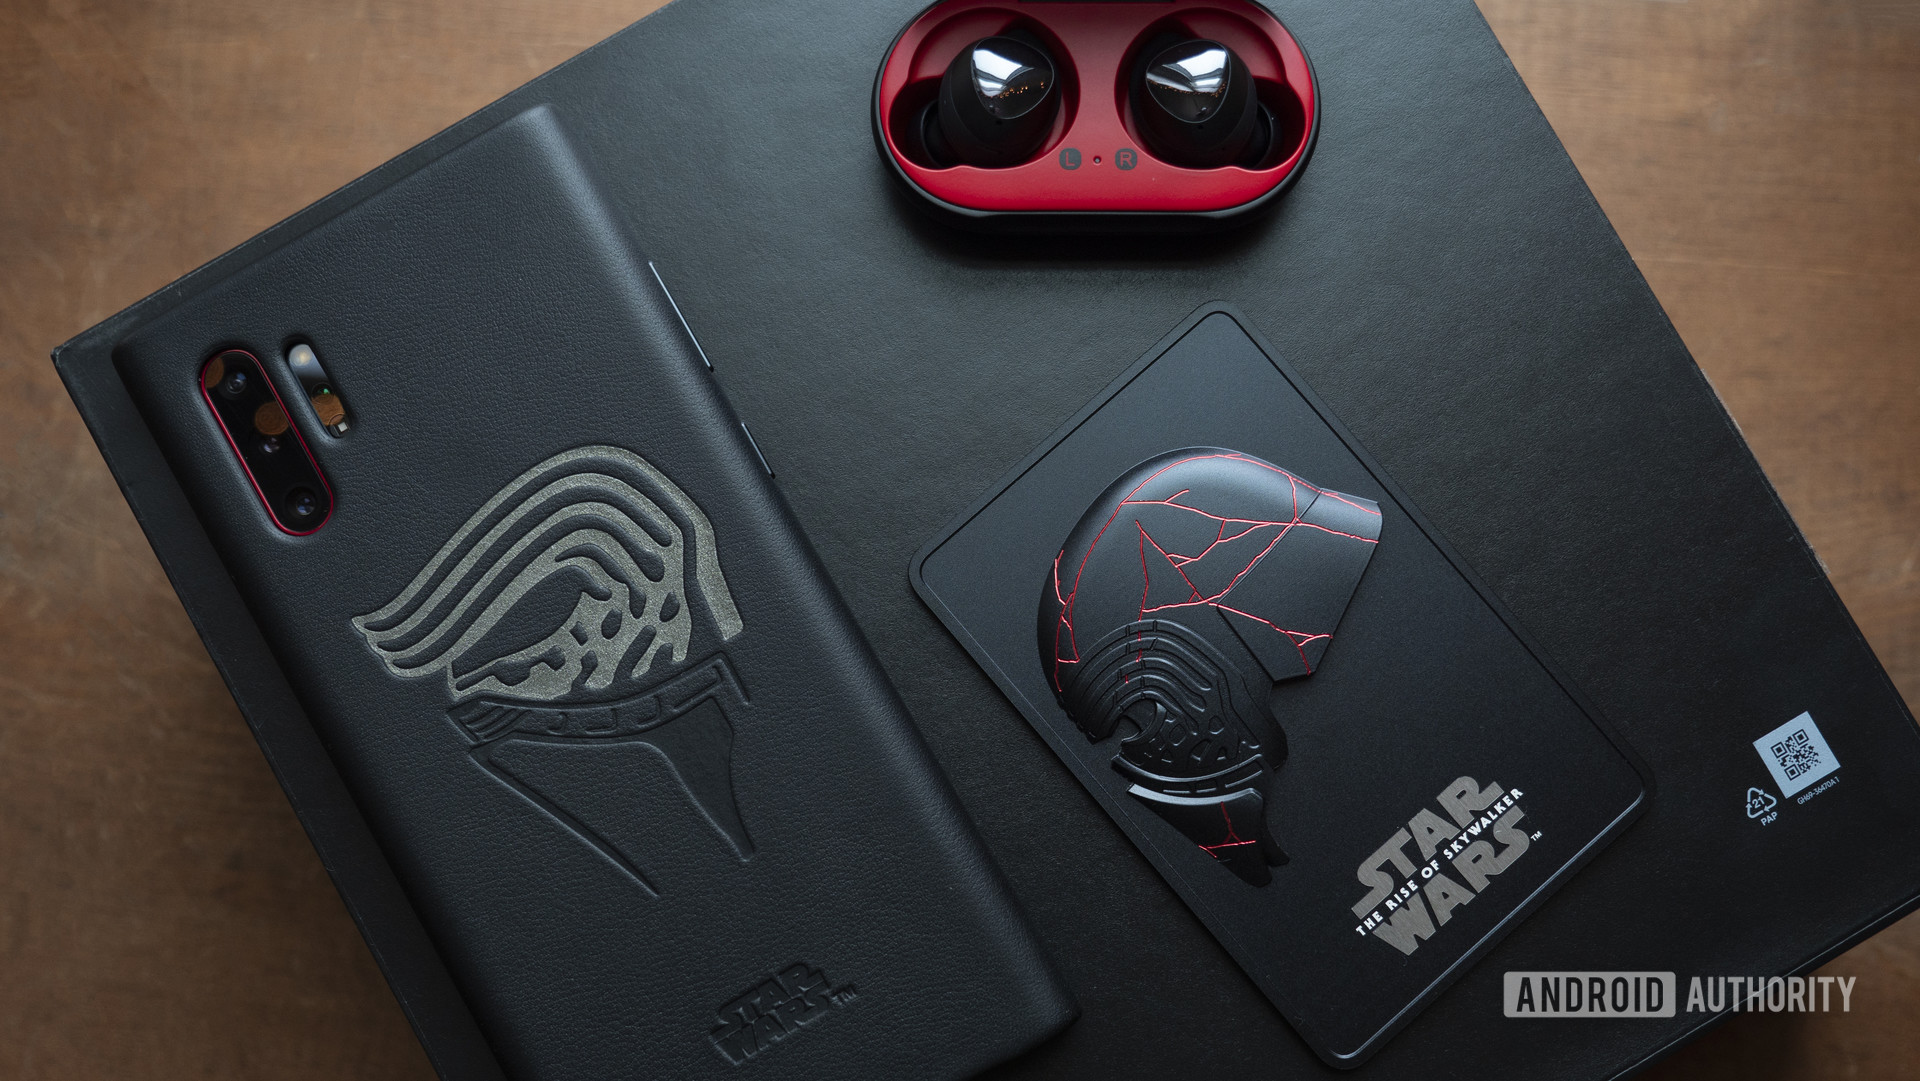 Chia sẻ một số hình ảnh cận cảnh phiên bản Galaxy Note
10+ Star Wars Edition